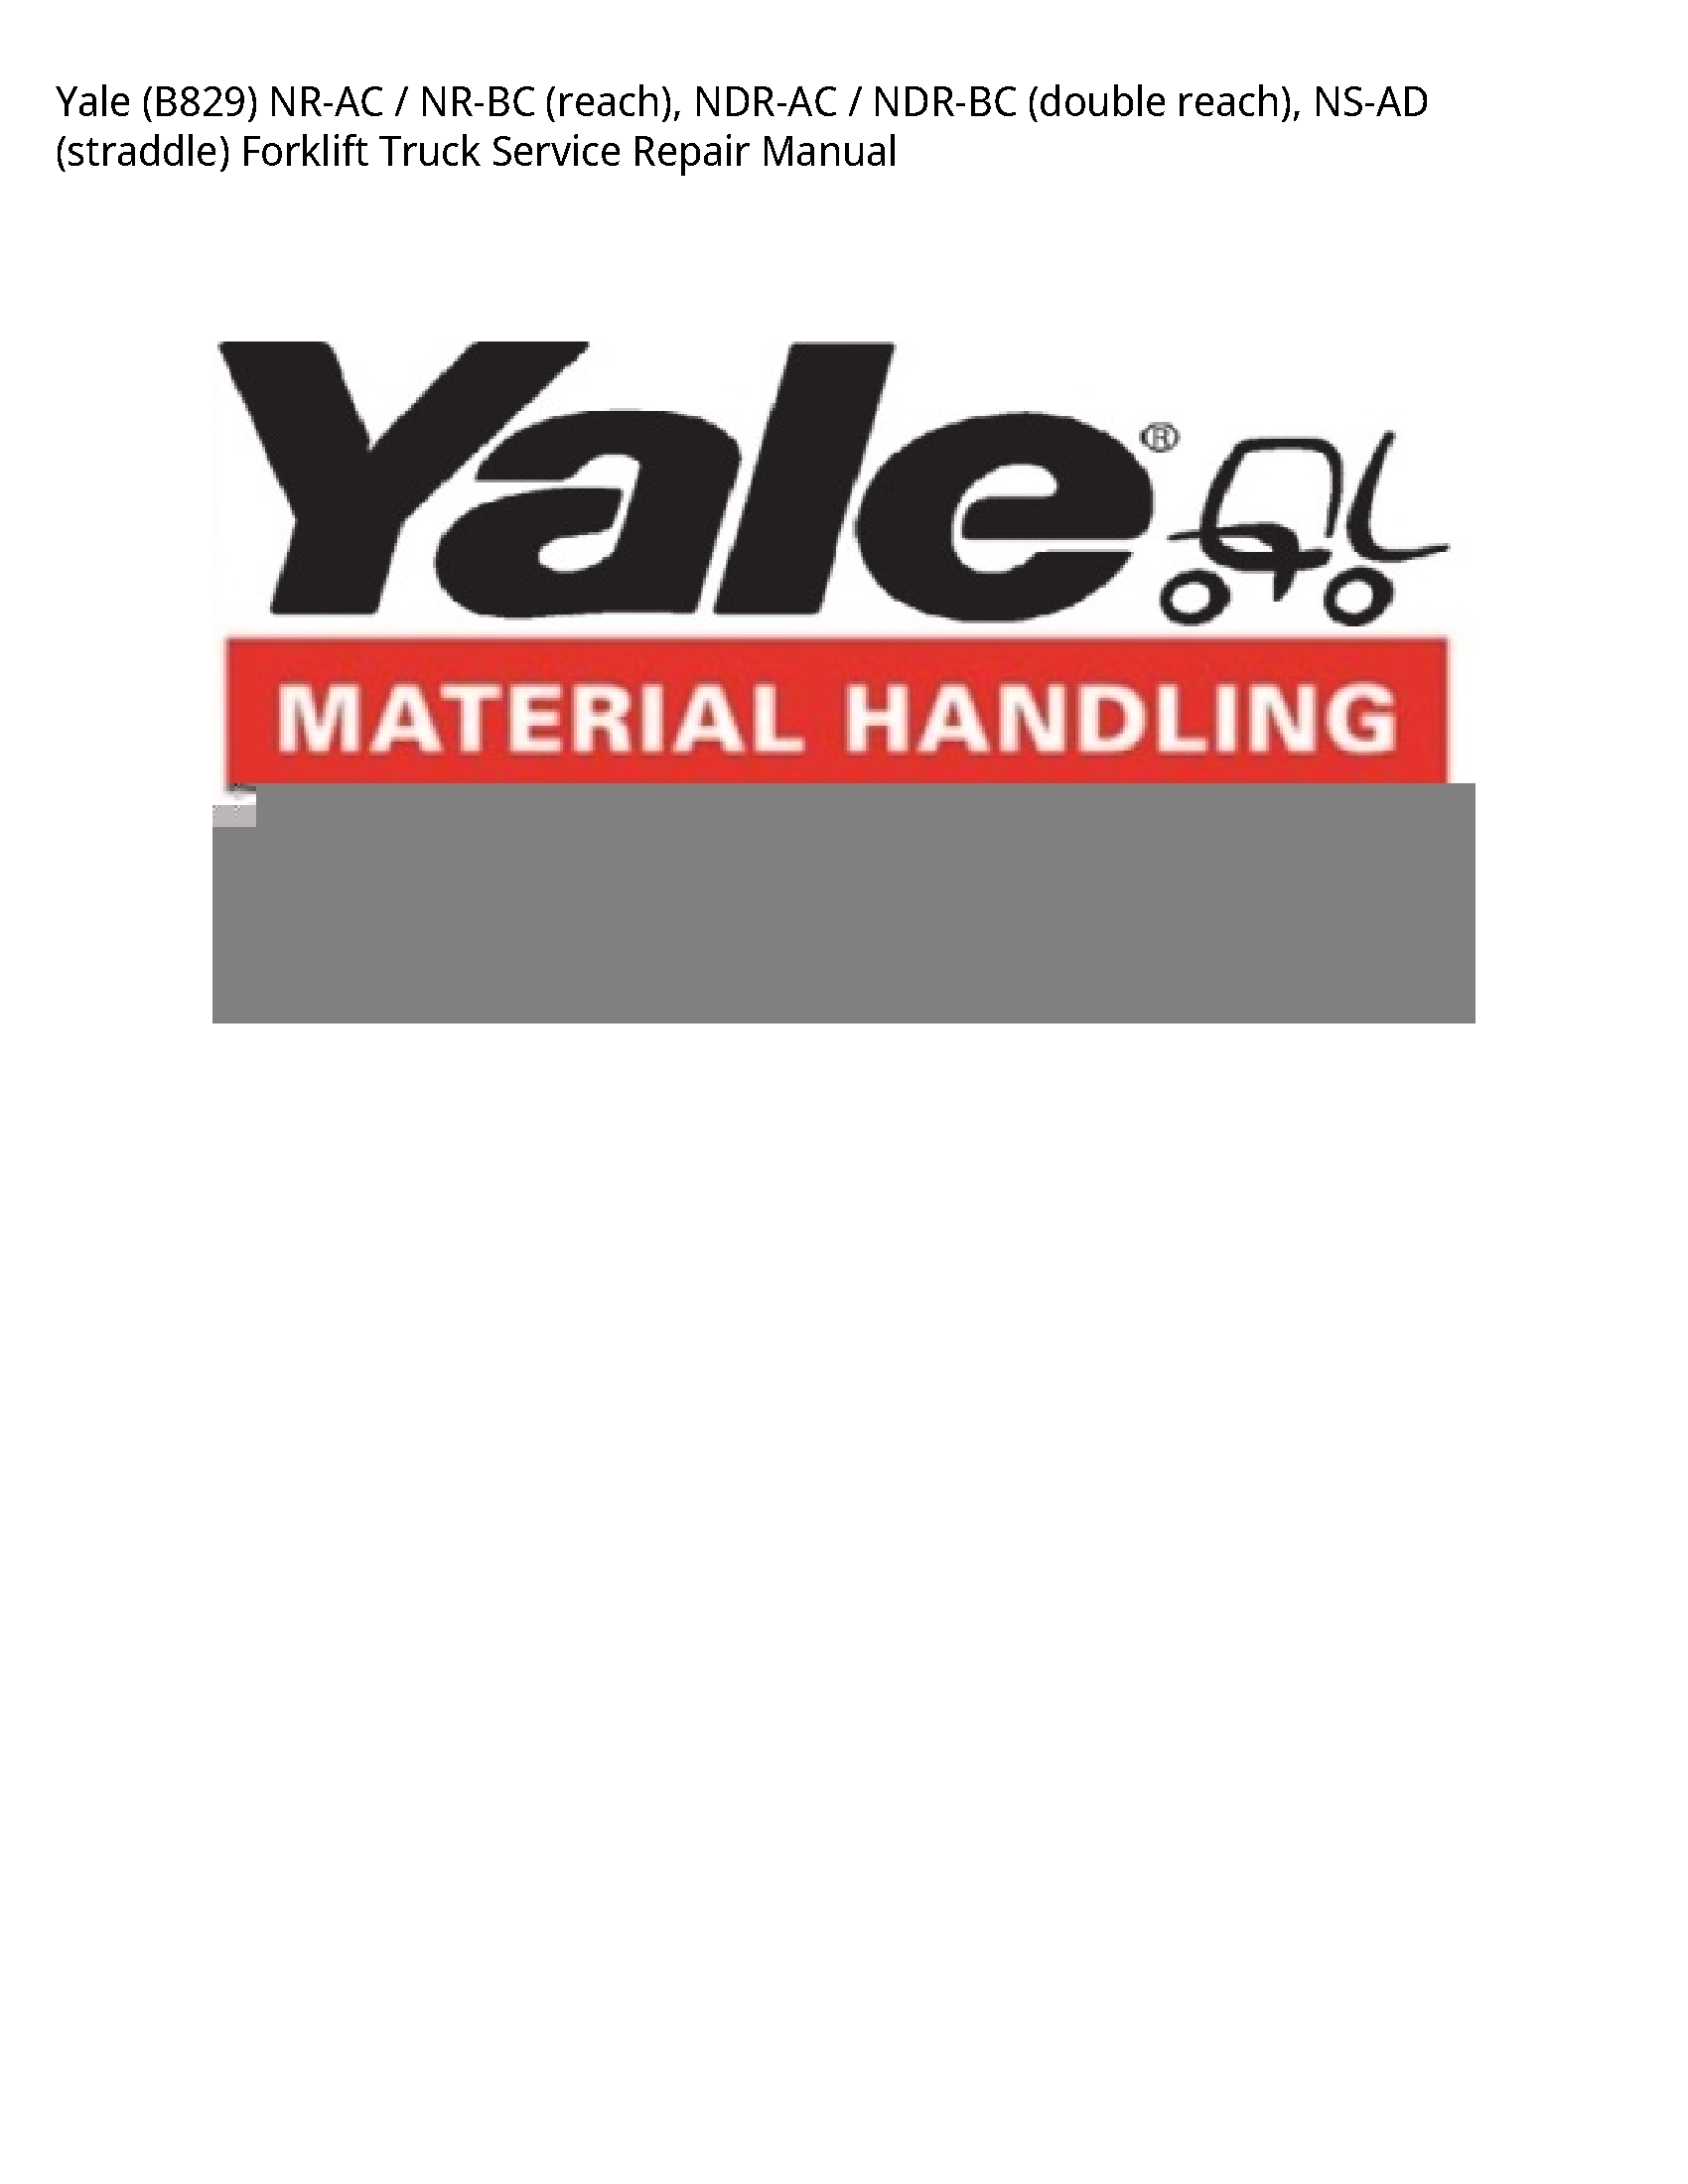 Yale (B829) NR-AC NR-BC (reach) manual